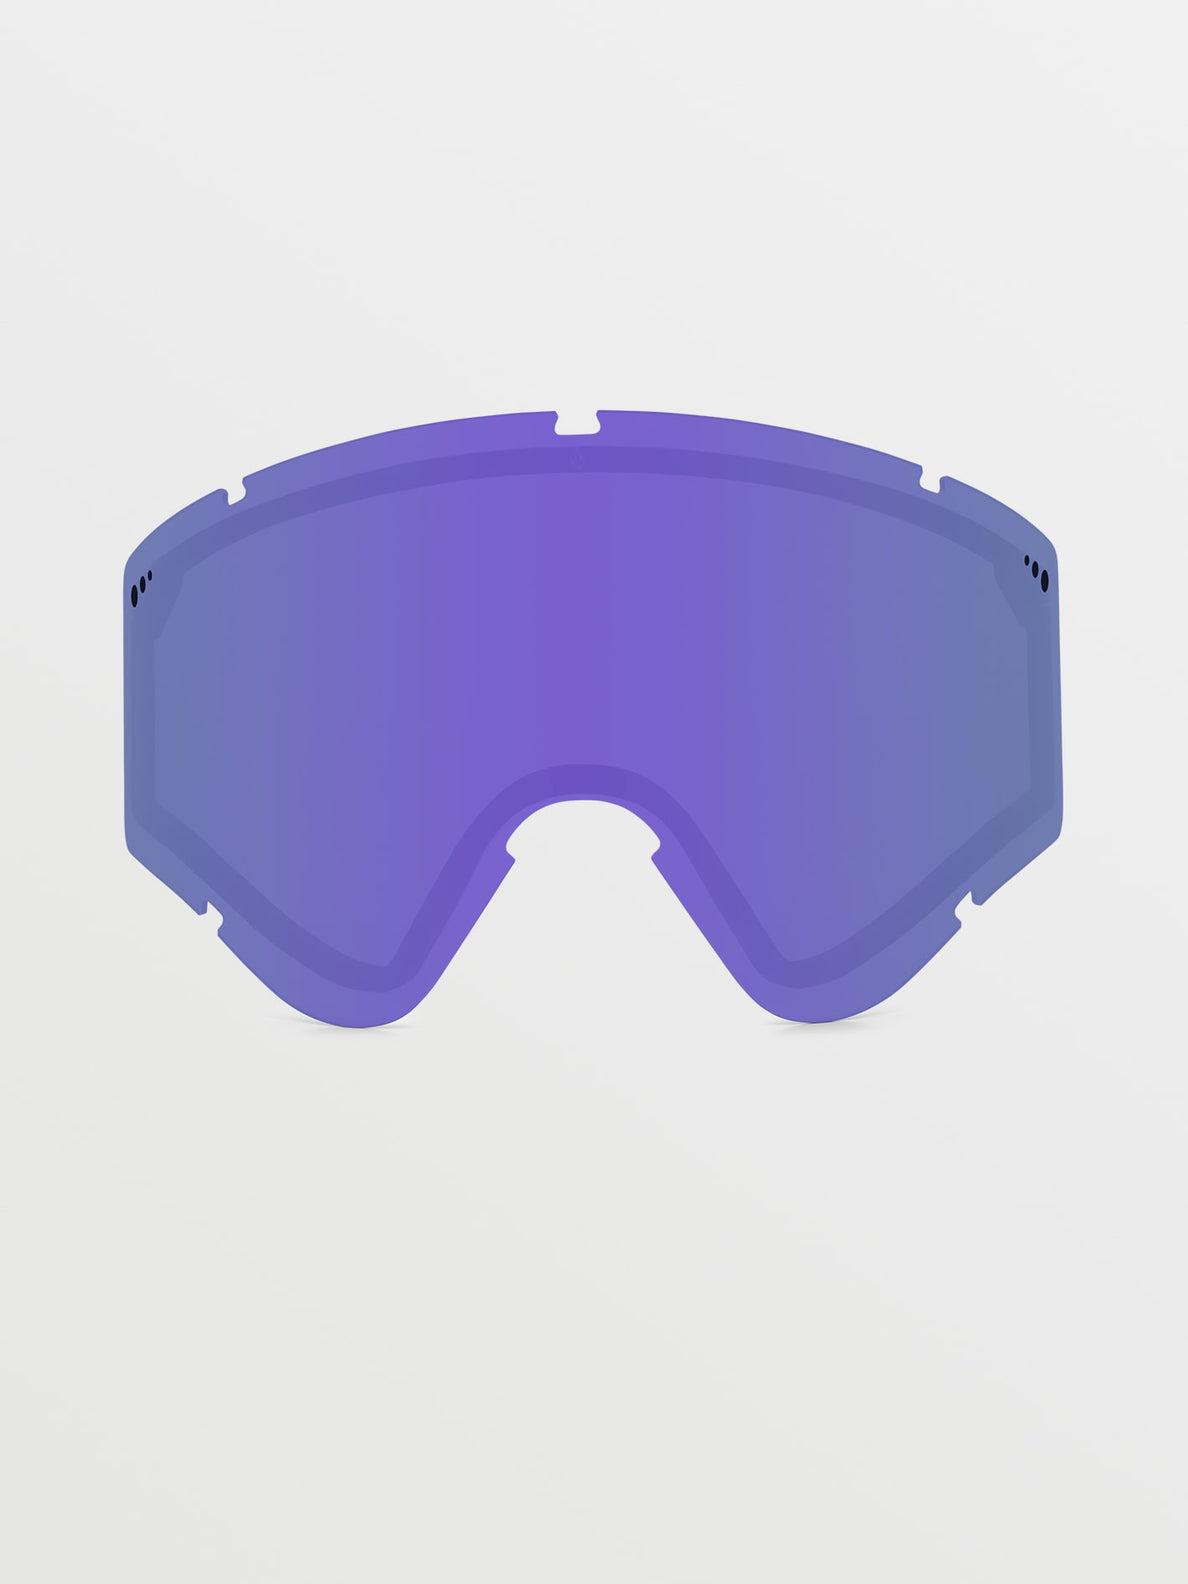 Yae Lens - Purple Chrome